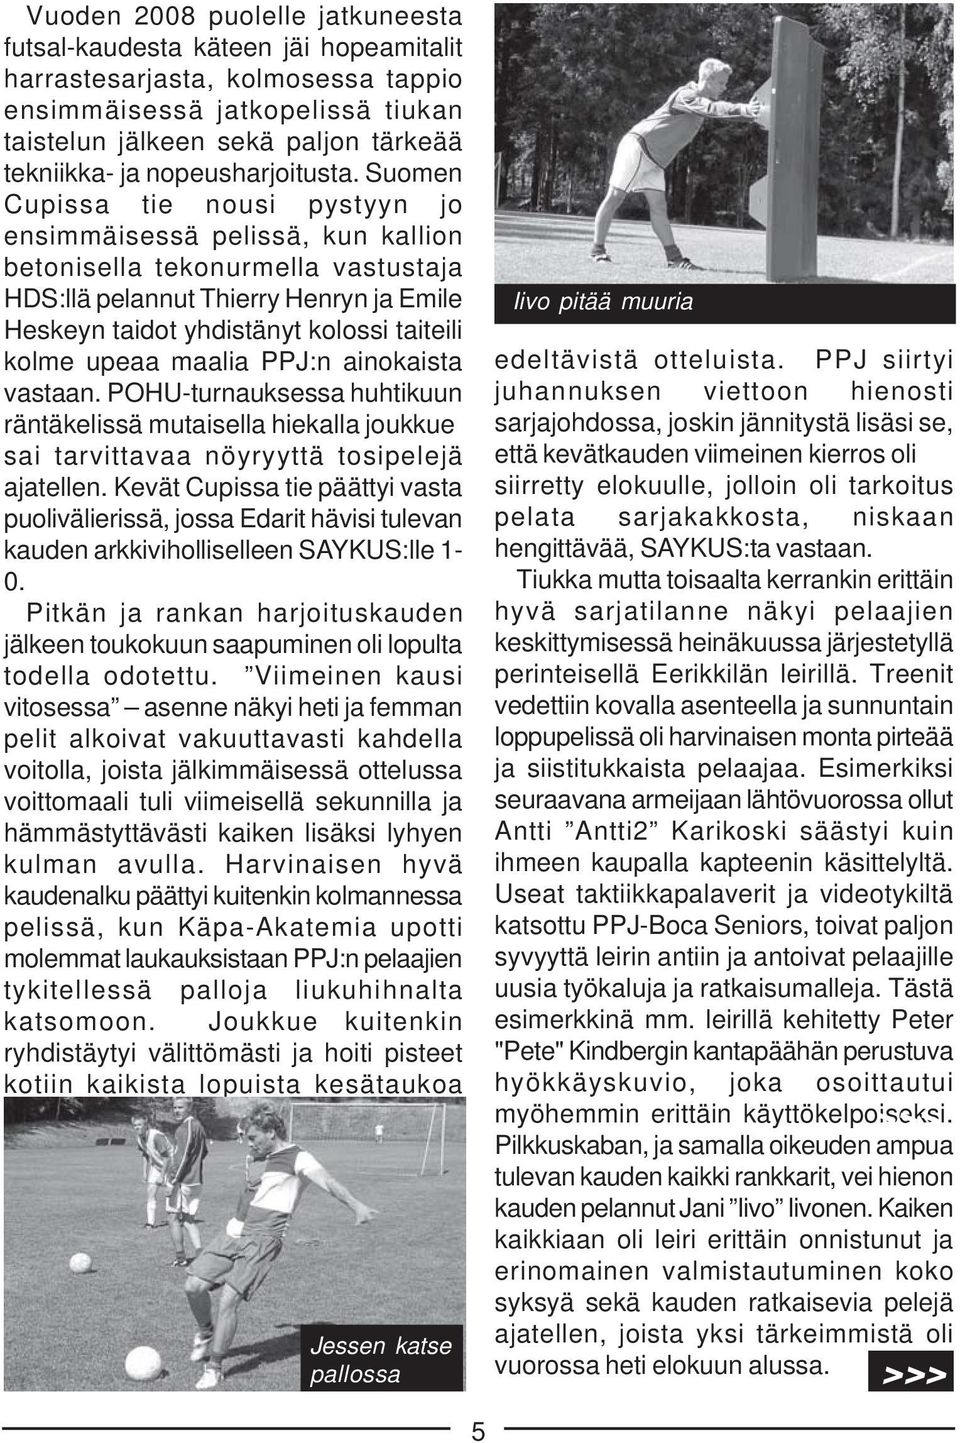 Suomen Cupissa tie nousi pystyyn jo ensimmäisessä pelissä, kun kallion betonisella tekonurmella vastustaja HDS:llä pelannut Thierry Henryn ja Emile Heskeyn taidot yhdistänyt kolossi taiteili kolme